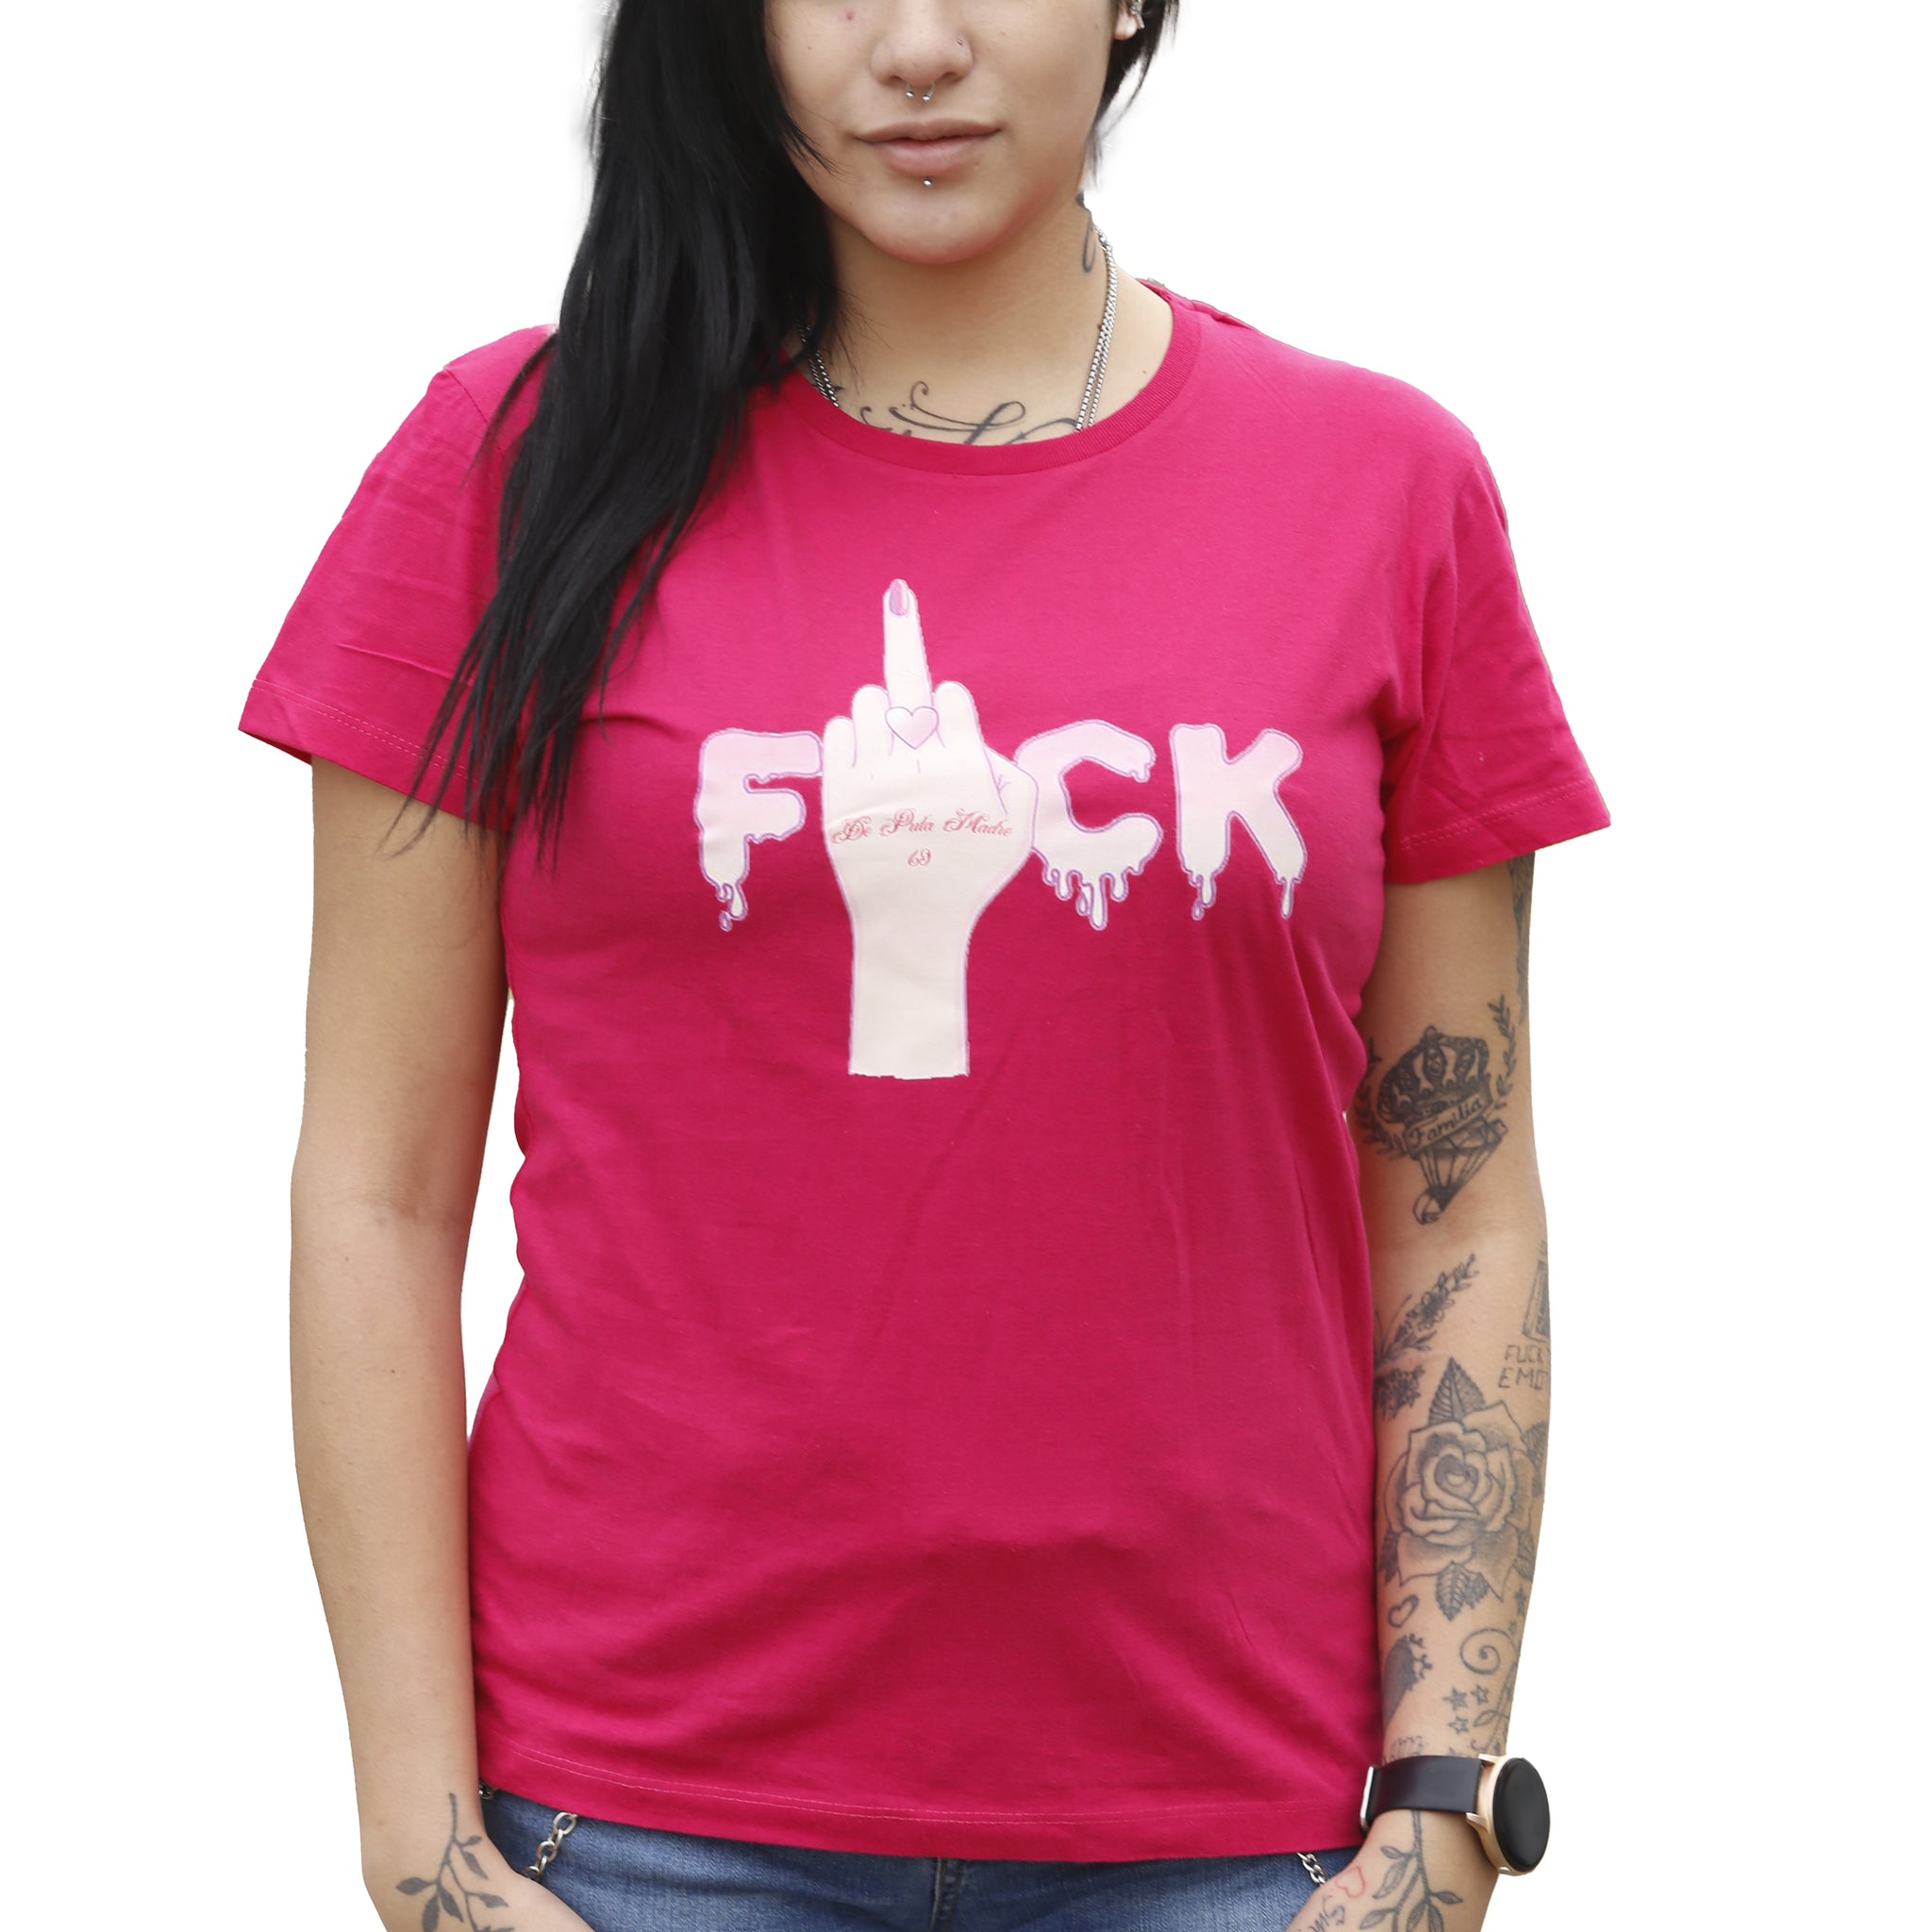 DPM69 T-shirt da donna disegno fatto a mano in italia  F**ck!